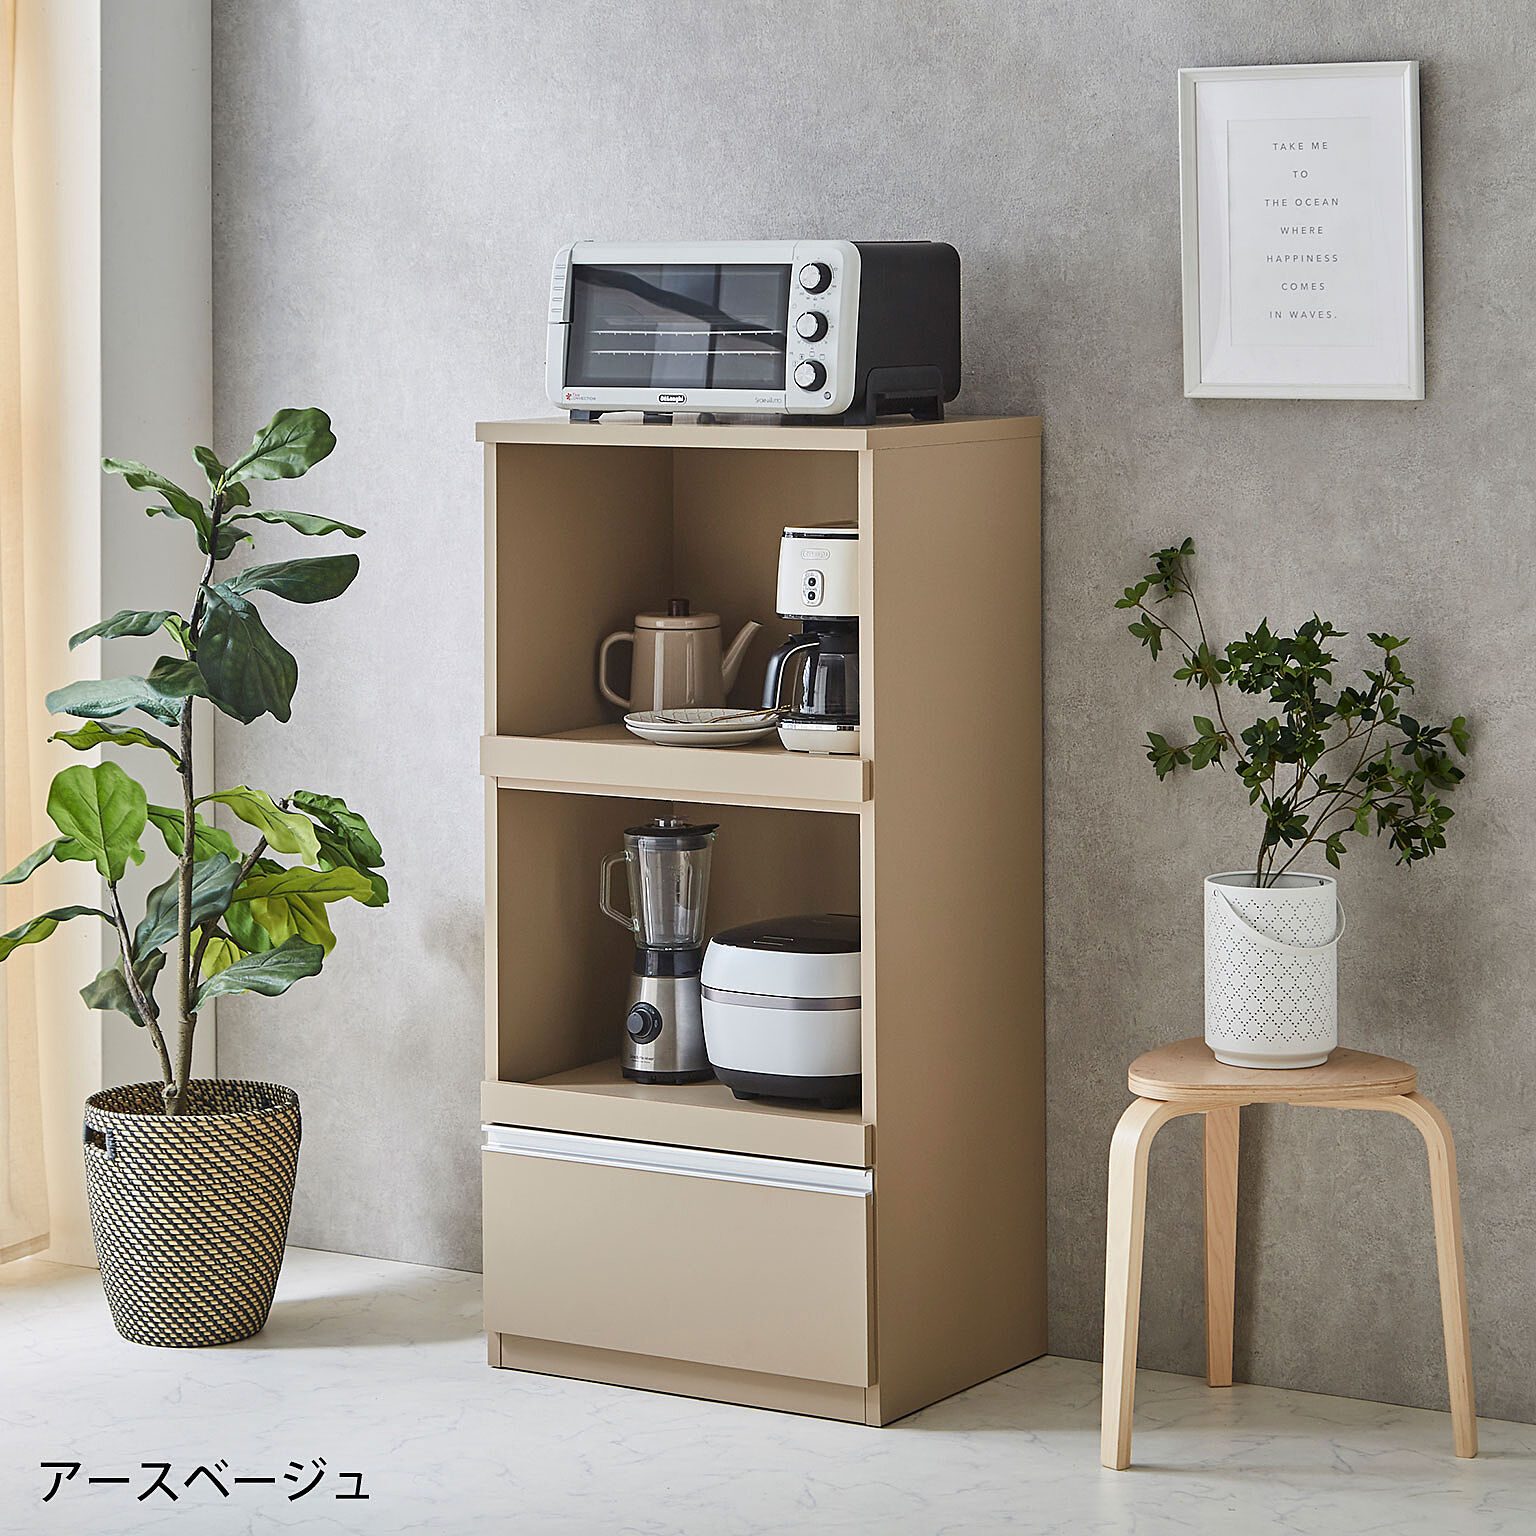 スイム 完成品 日本製 コンパクト家電収納 幅59cm 食器棚 レンジラック